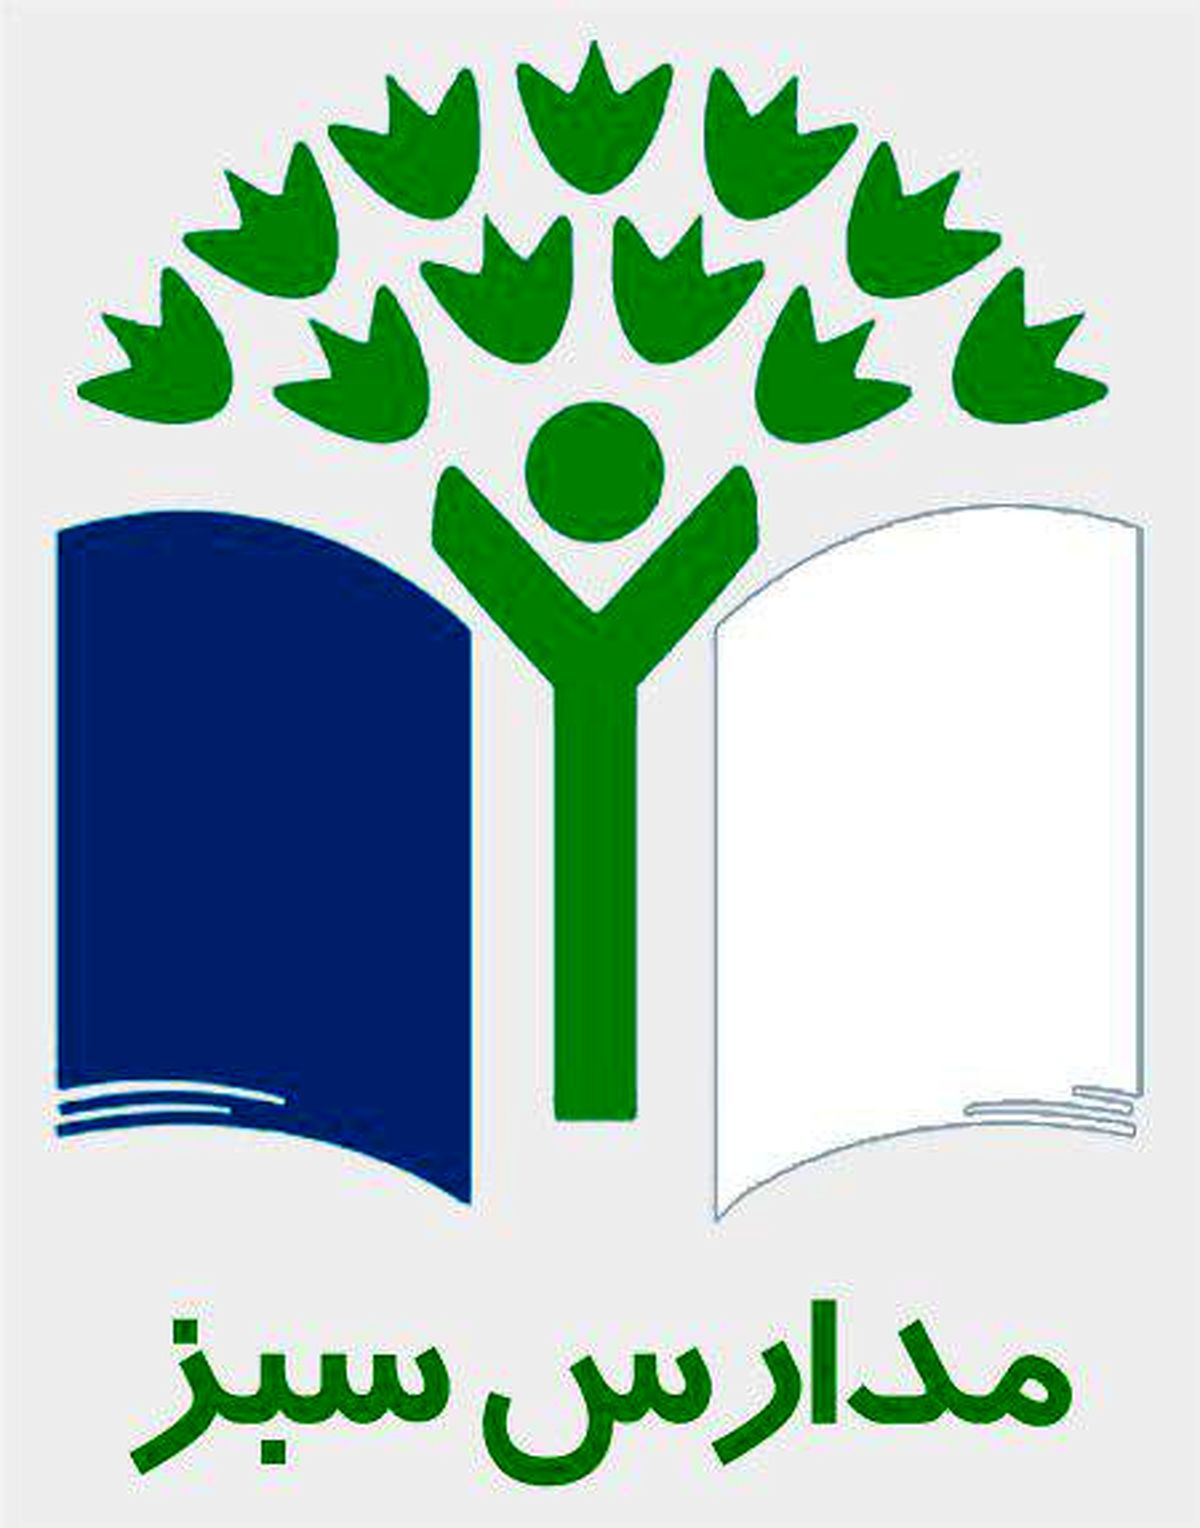 طرح مدارس سبز در نجف آباد به اجرا گذاشته شد